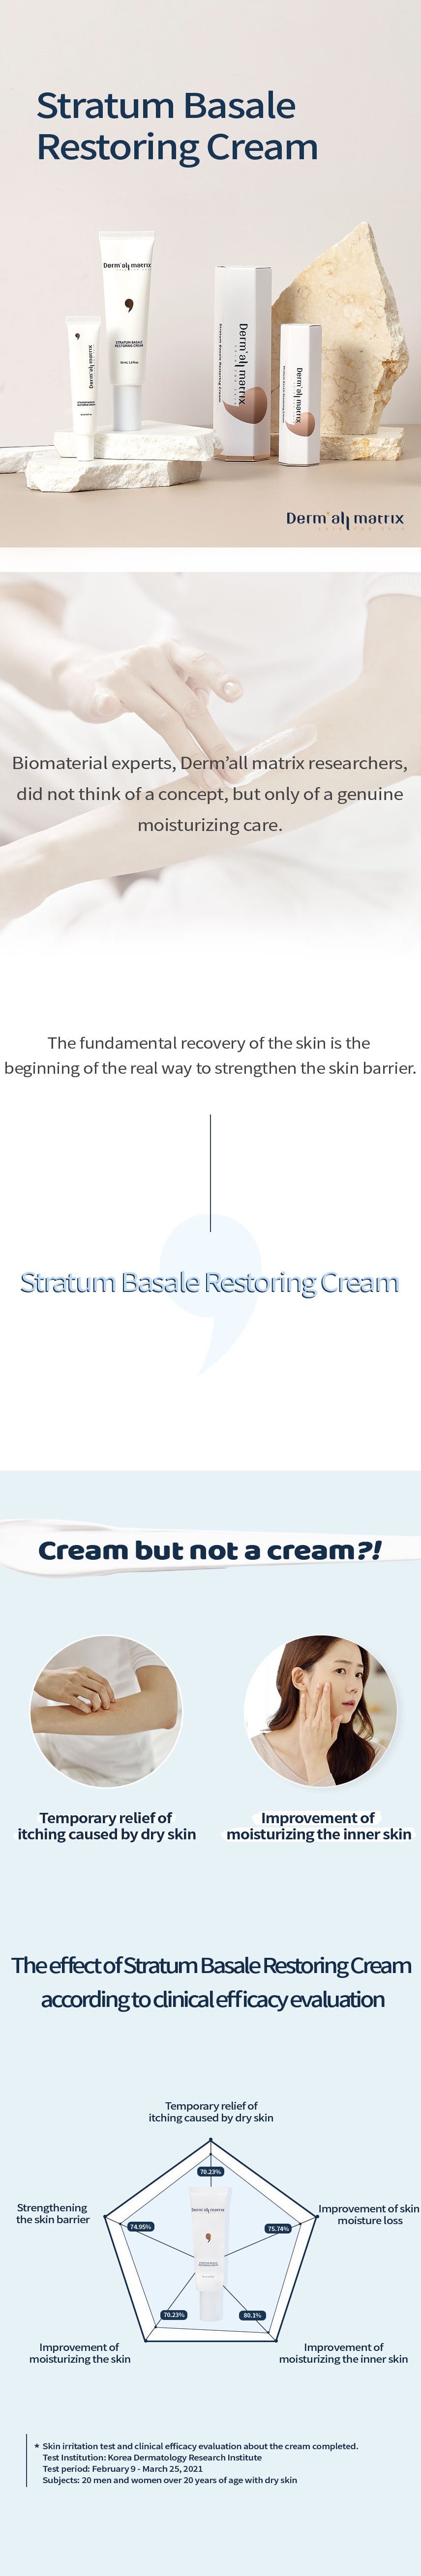 Stratum Basale Restoring Cream